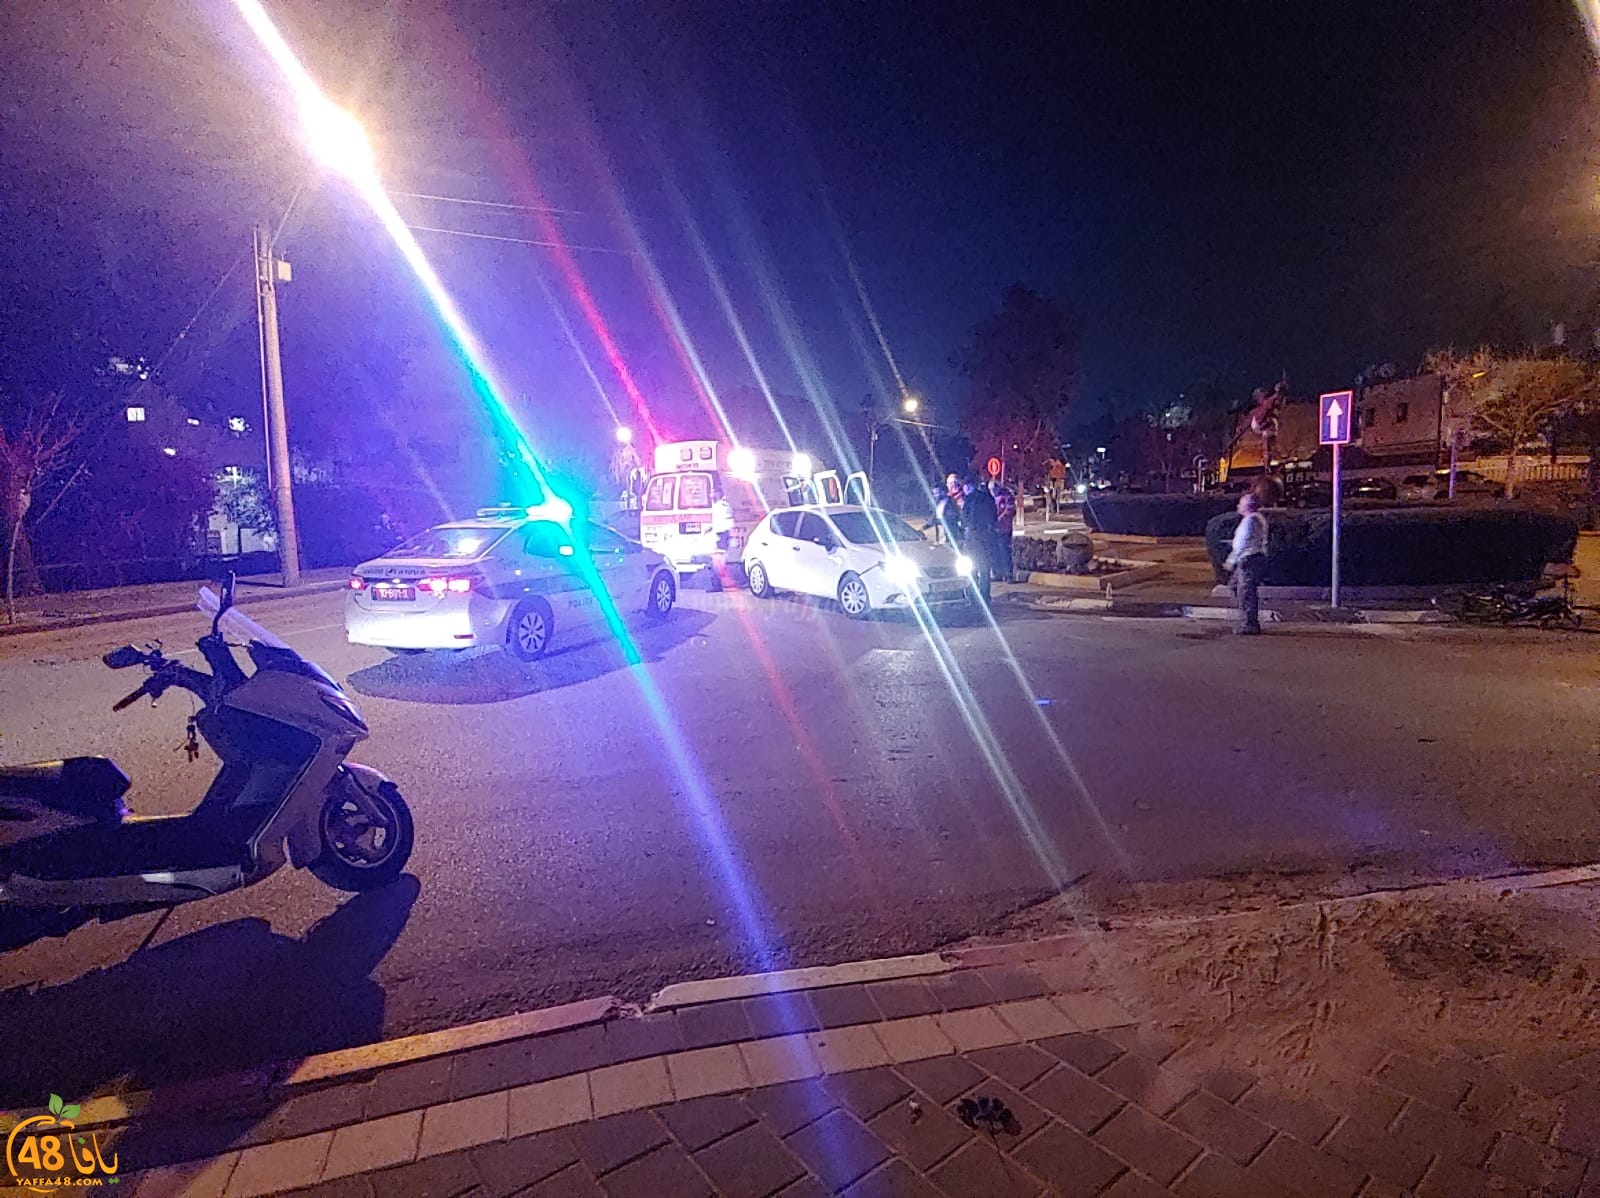  يافا: إصابة طفيفة لراكب دراجة هوائية بحادث دهس 